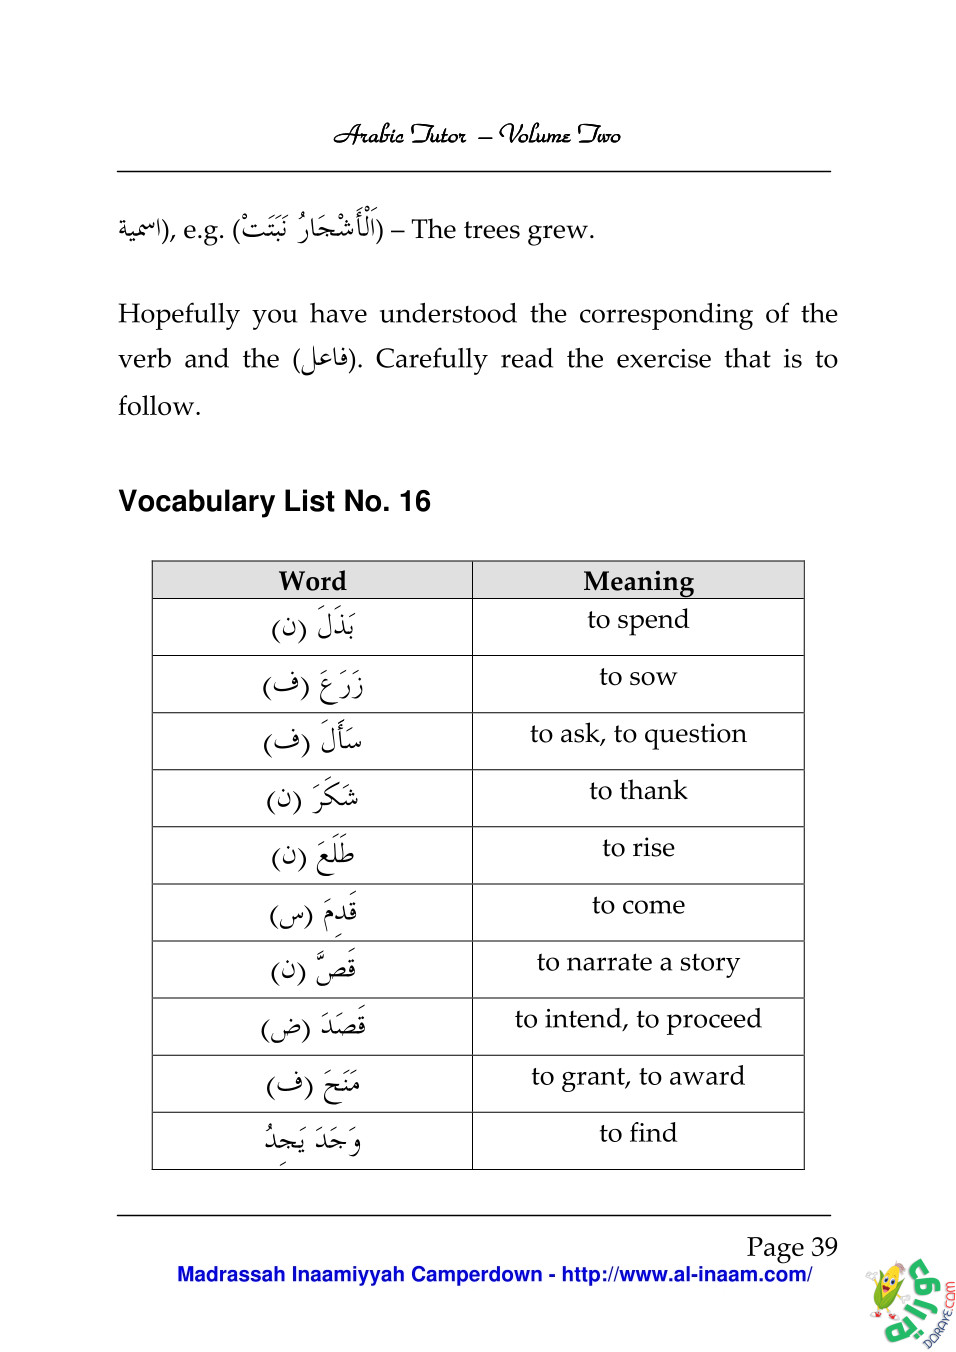 Arabic Tutor Volume Two 039 - Arabic Tutor Volume-Two 2